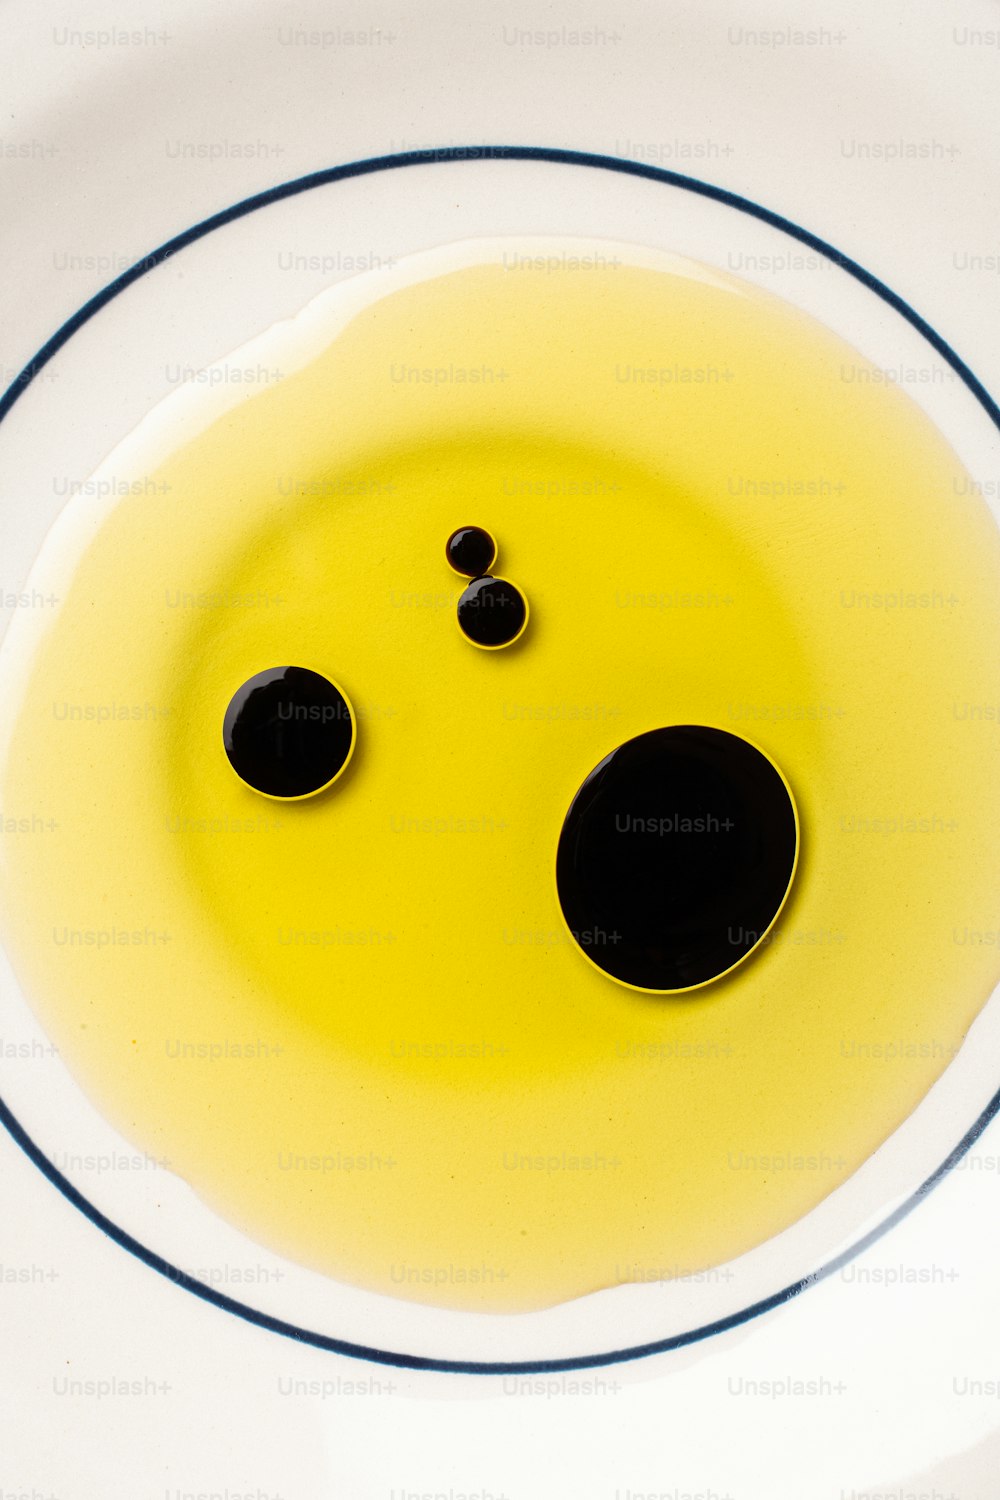 un piatto bianco con una faccina sorridente gialla su di esso